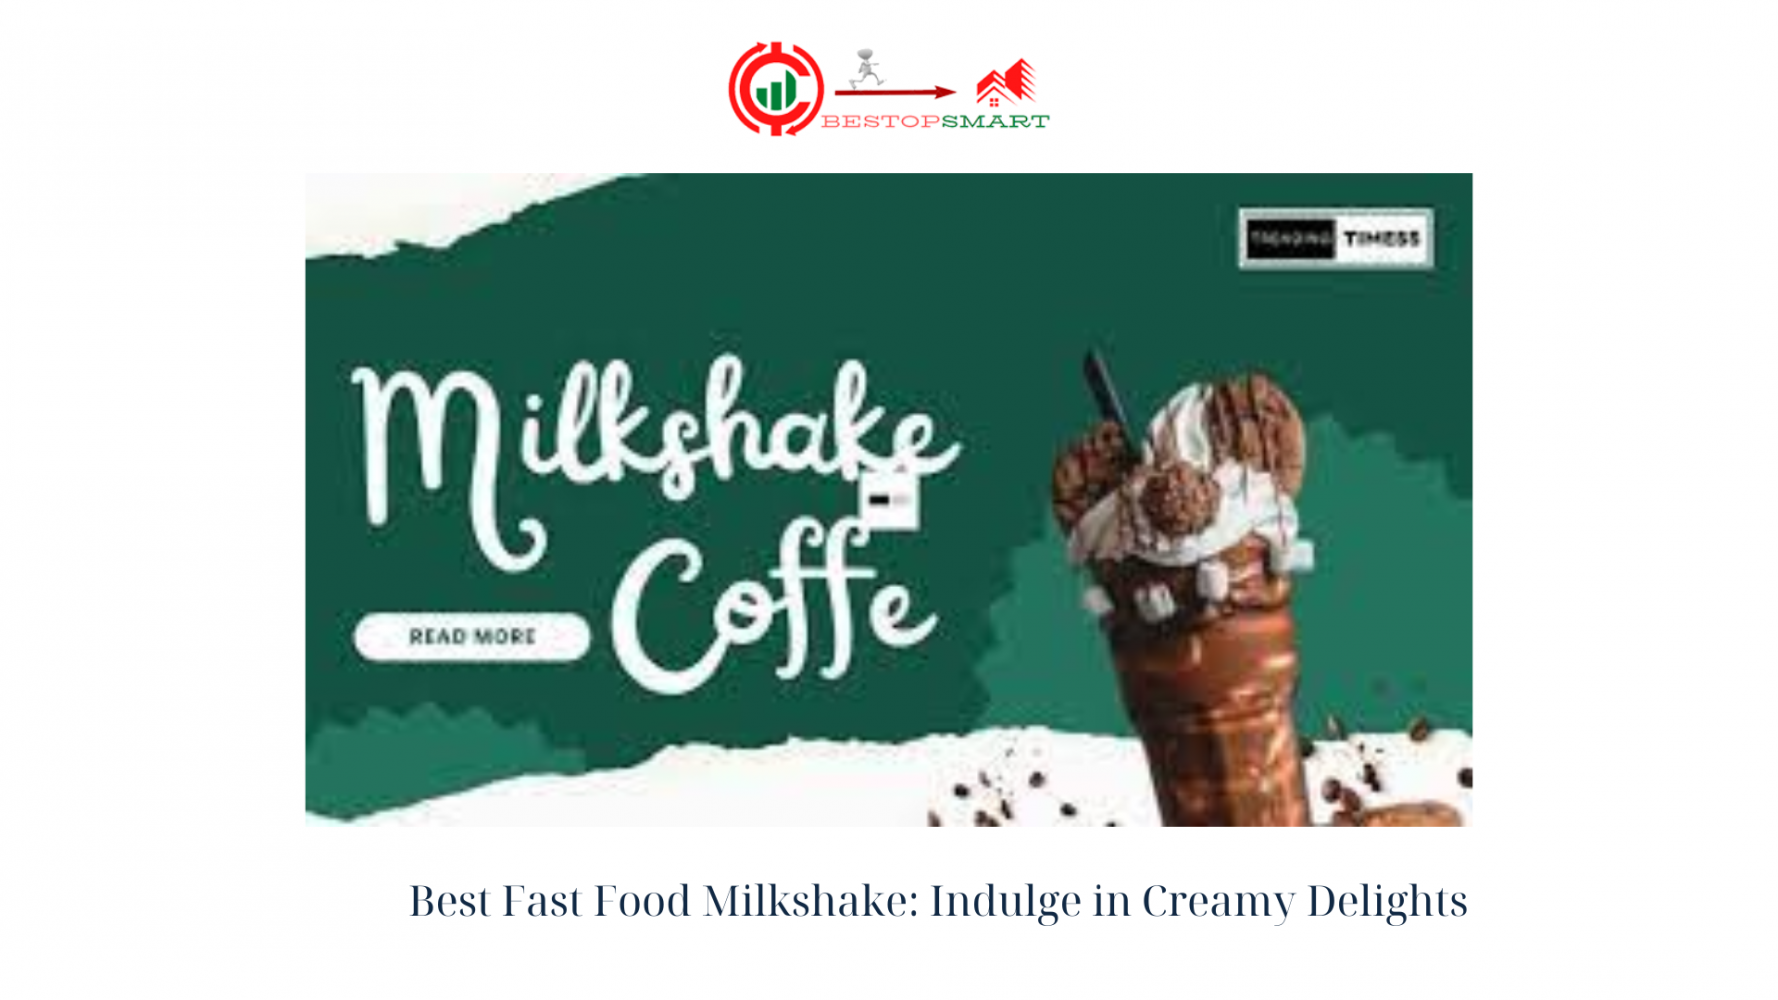 Best Fast Food Milkshake Indulge in Creamy Delights